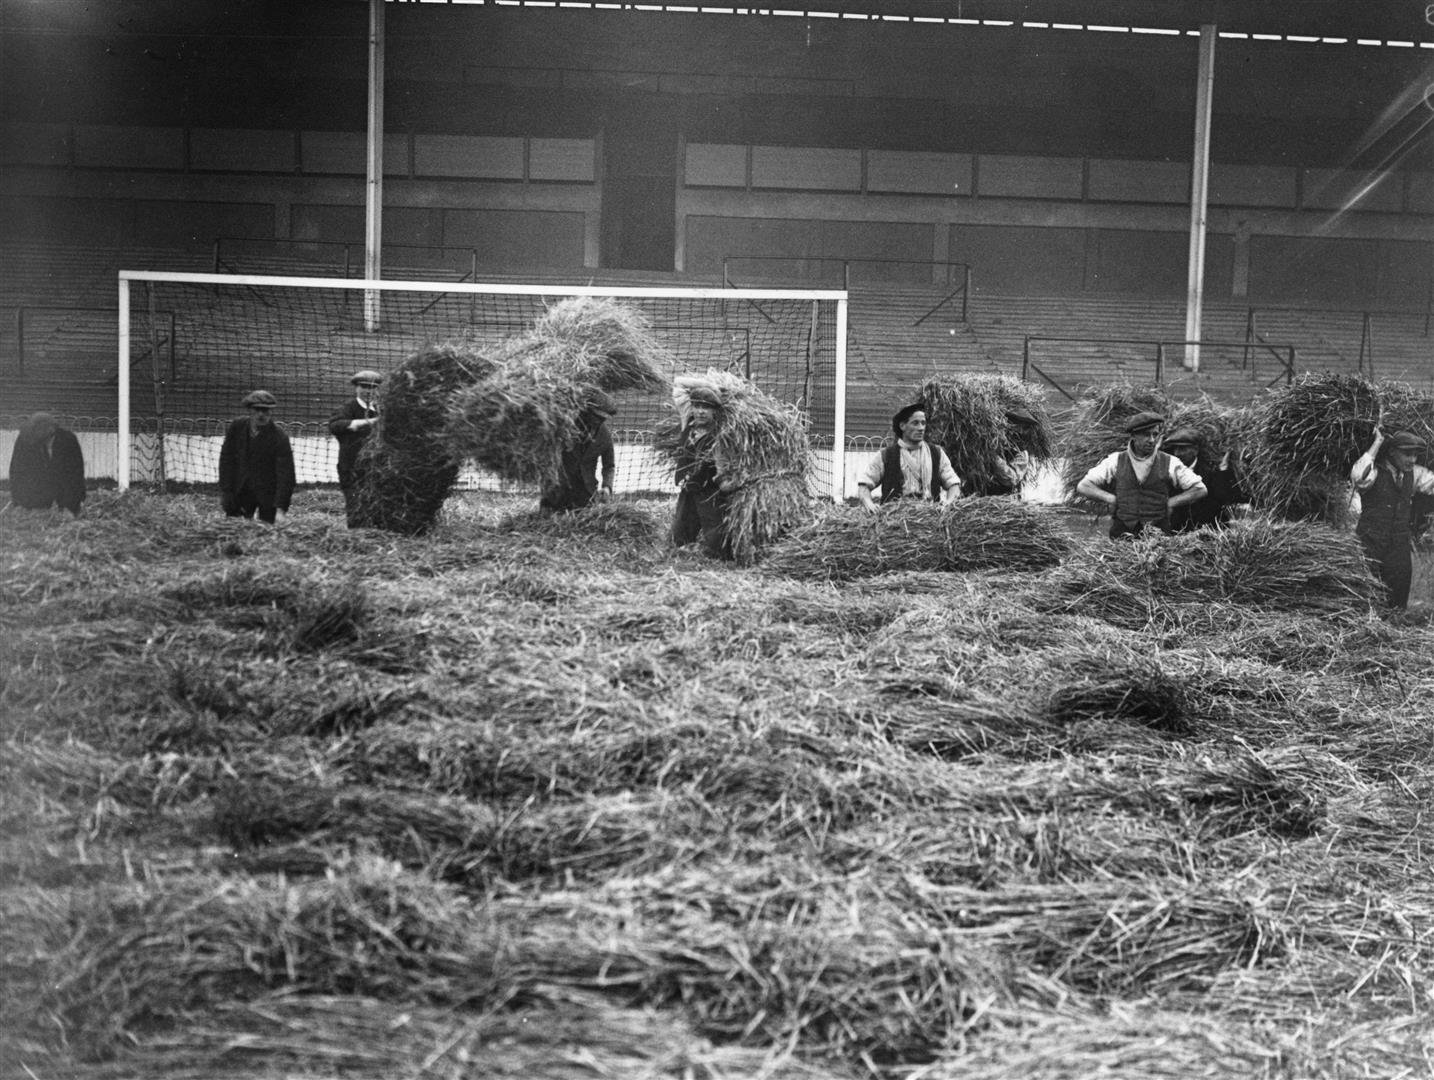 През зимата тревата на стадиона на Тотнъм е трябвало да се покрива с бали със сено, за да се предпази от студовете. За щастие, двубоят с Реал Мадрид през 1925 г. е в края на лятото и подобни мерки не са необходими.